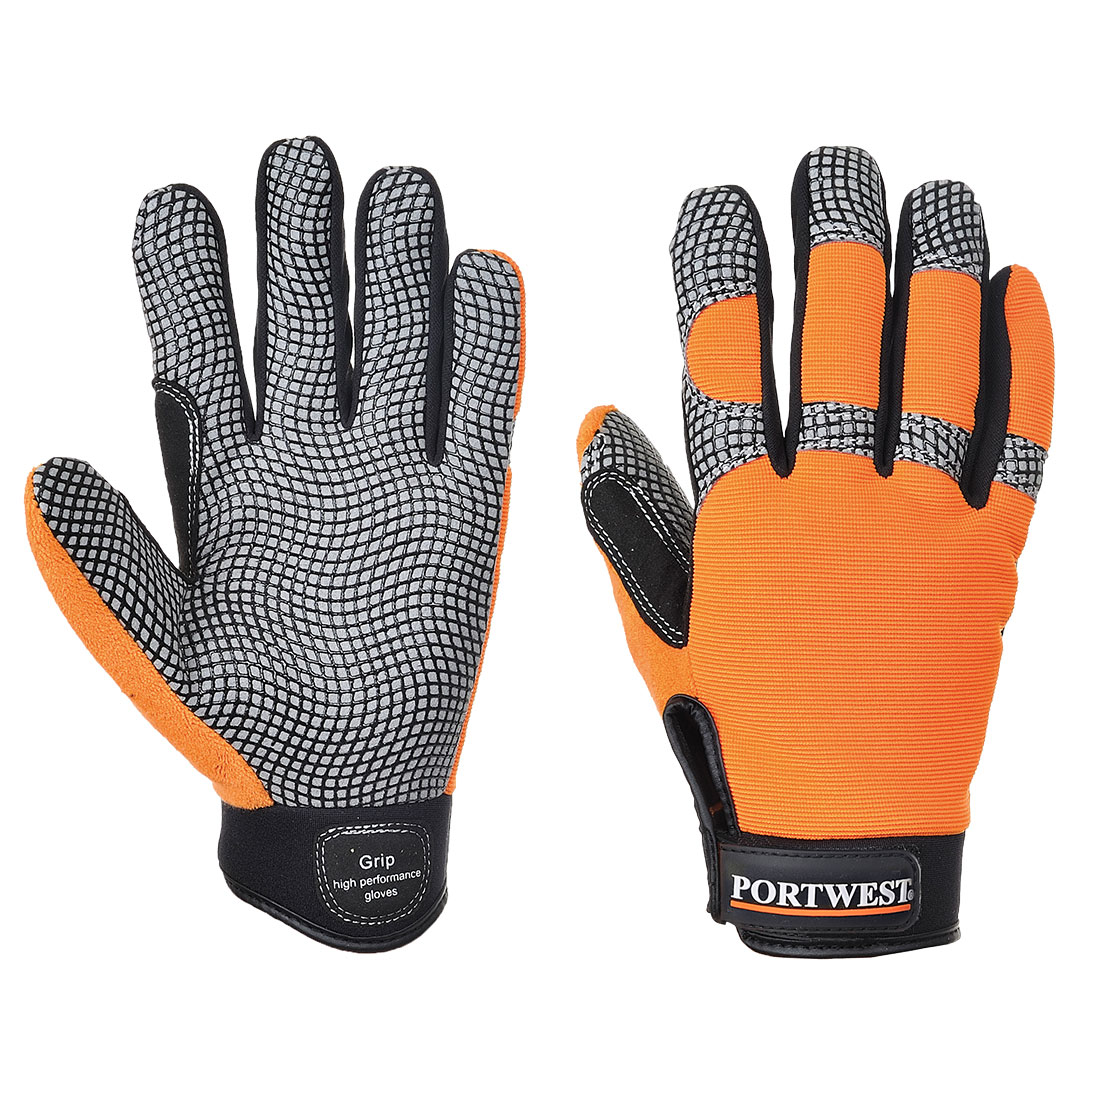 A735 Comfort Grip - High Performance Glove